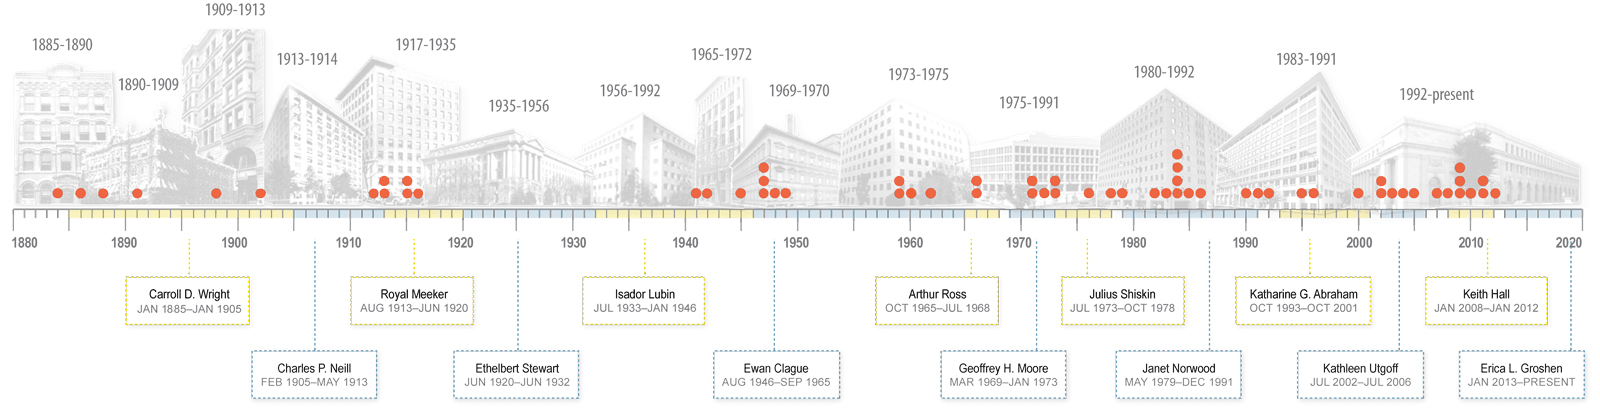 BLS History Timeline